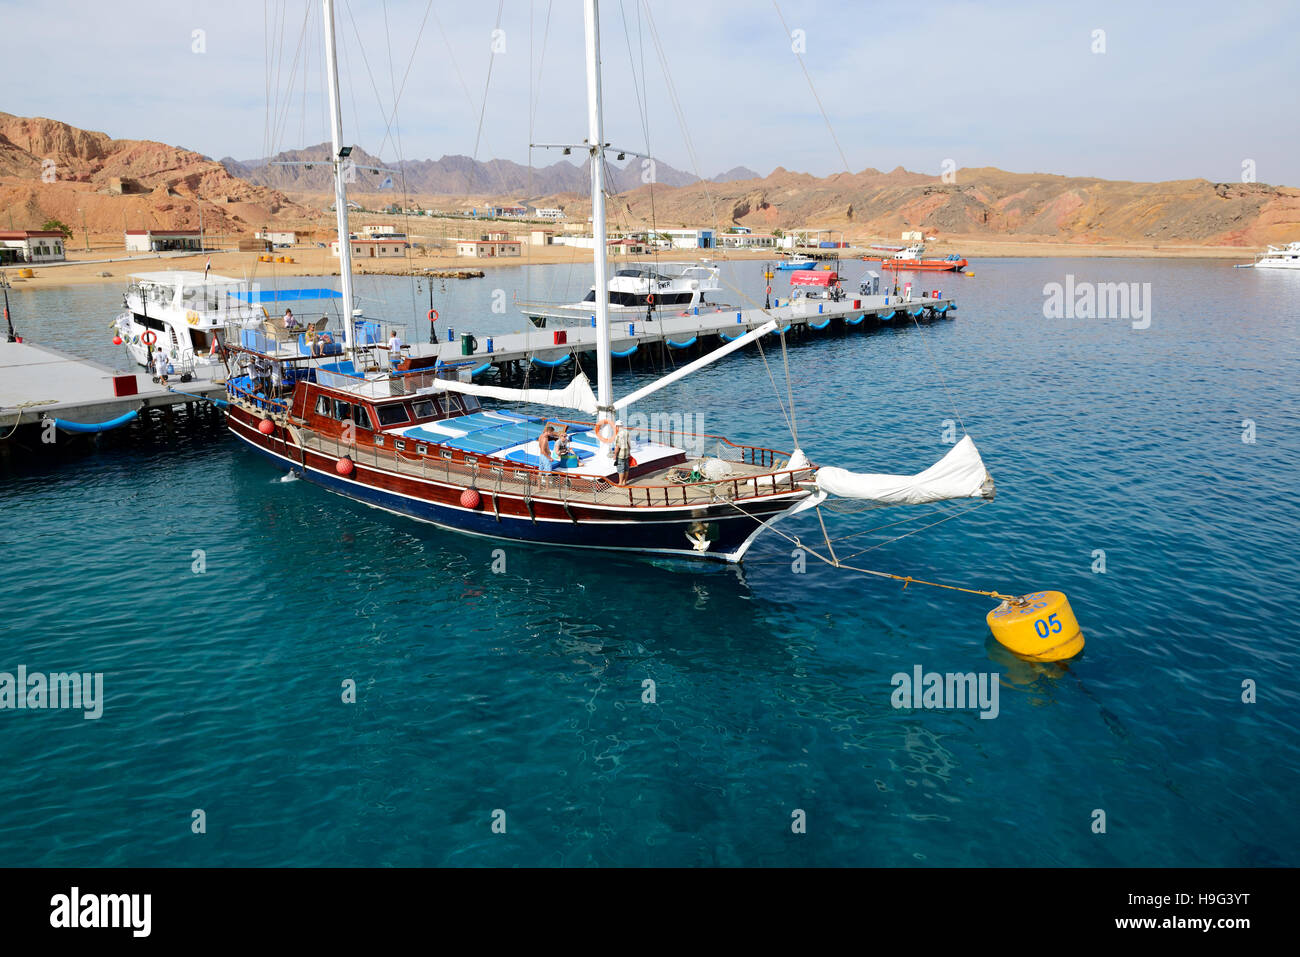 La vela yacht con i turisti è vicino al molo nel porto di Sharm el Sheikh, Egitto Foto Stock